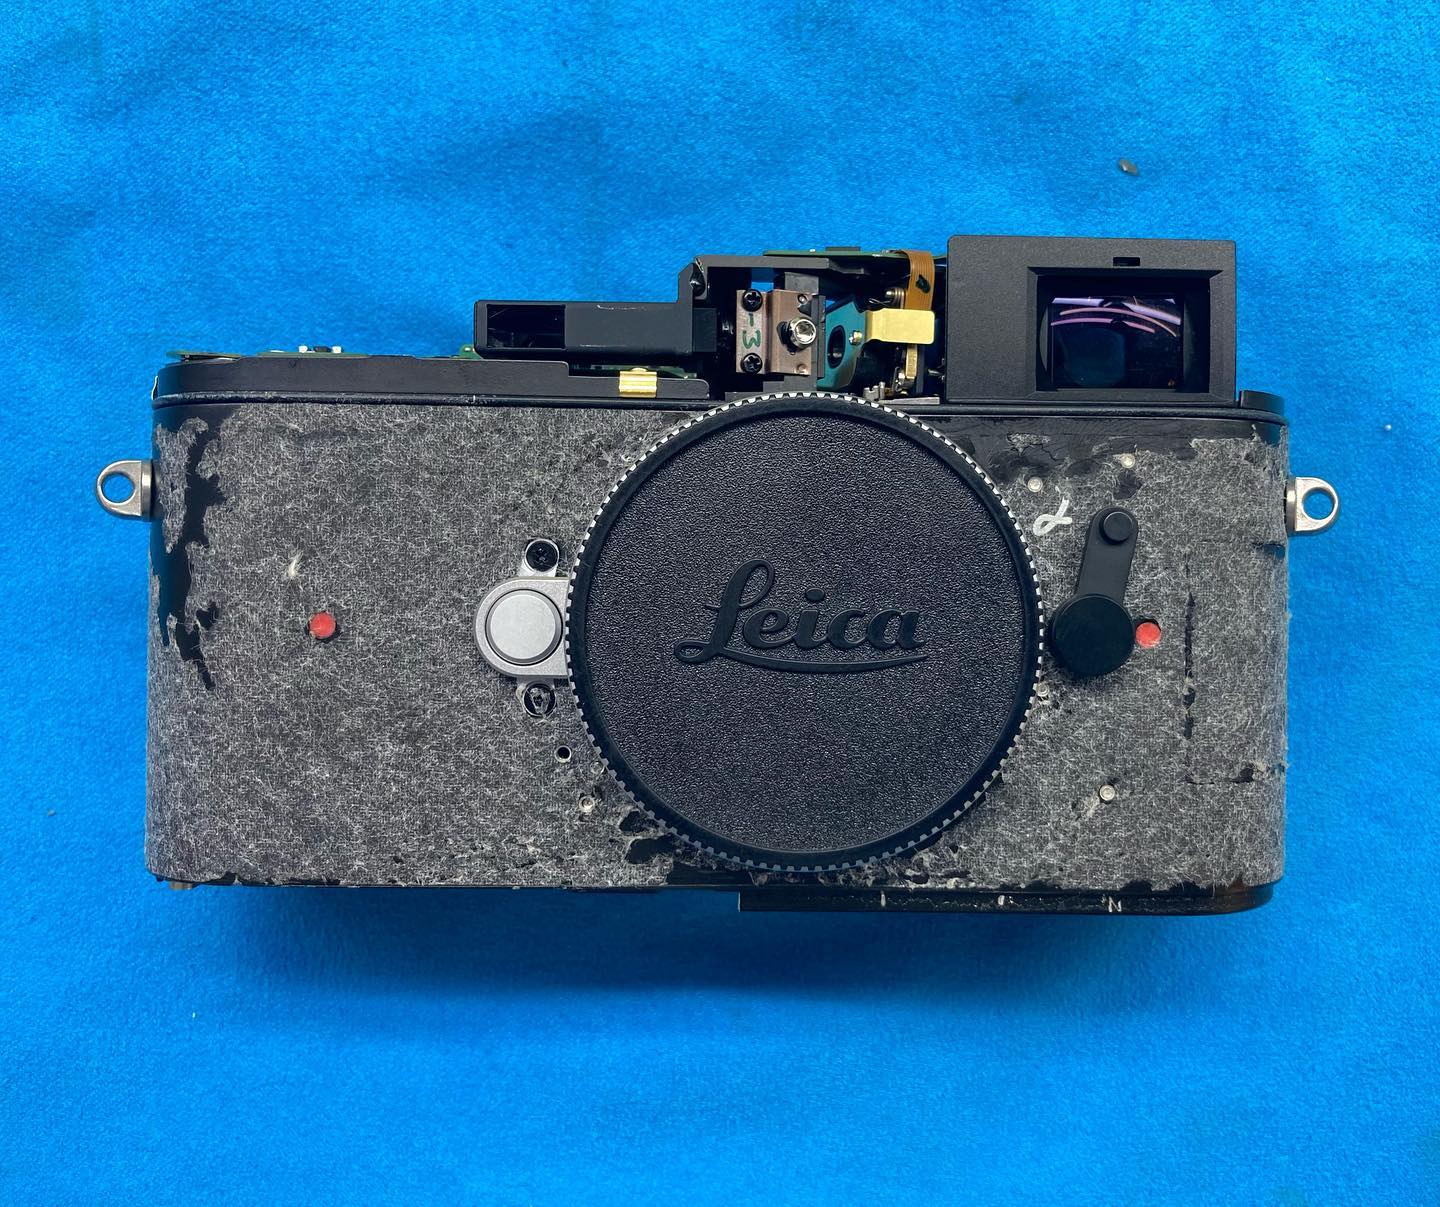 Leica for repair...